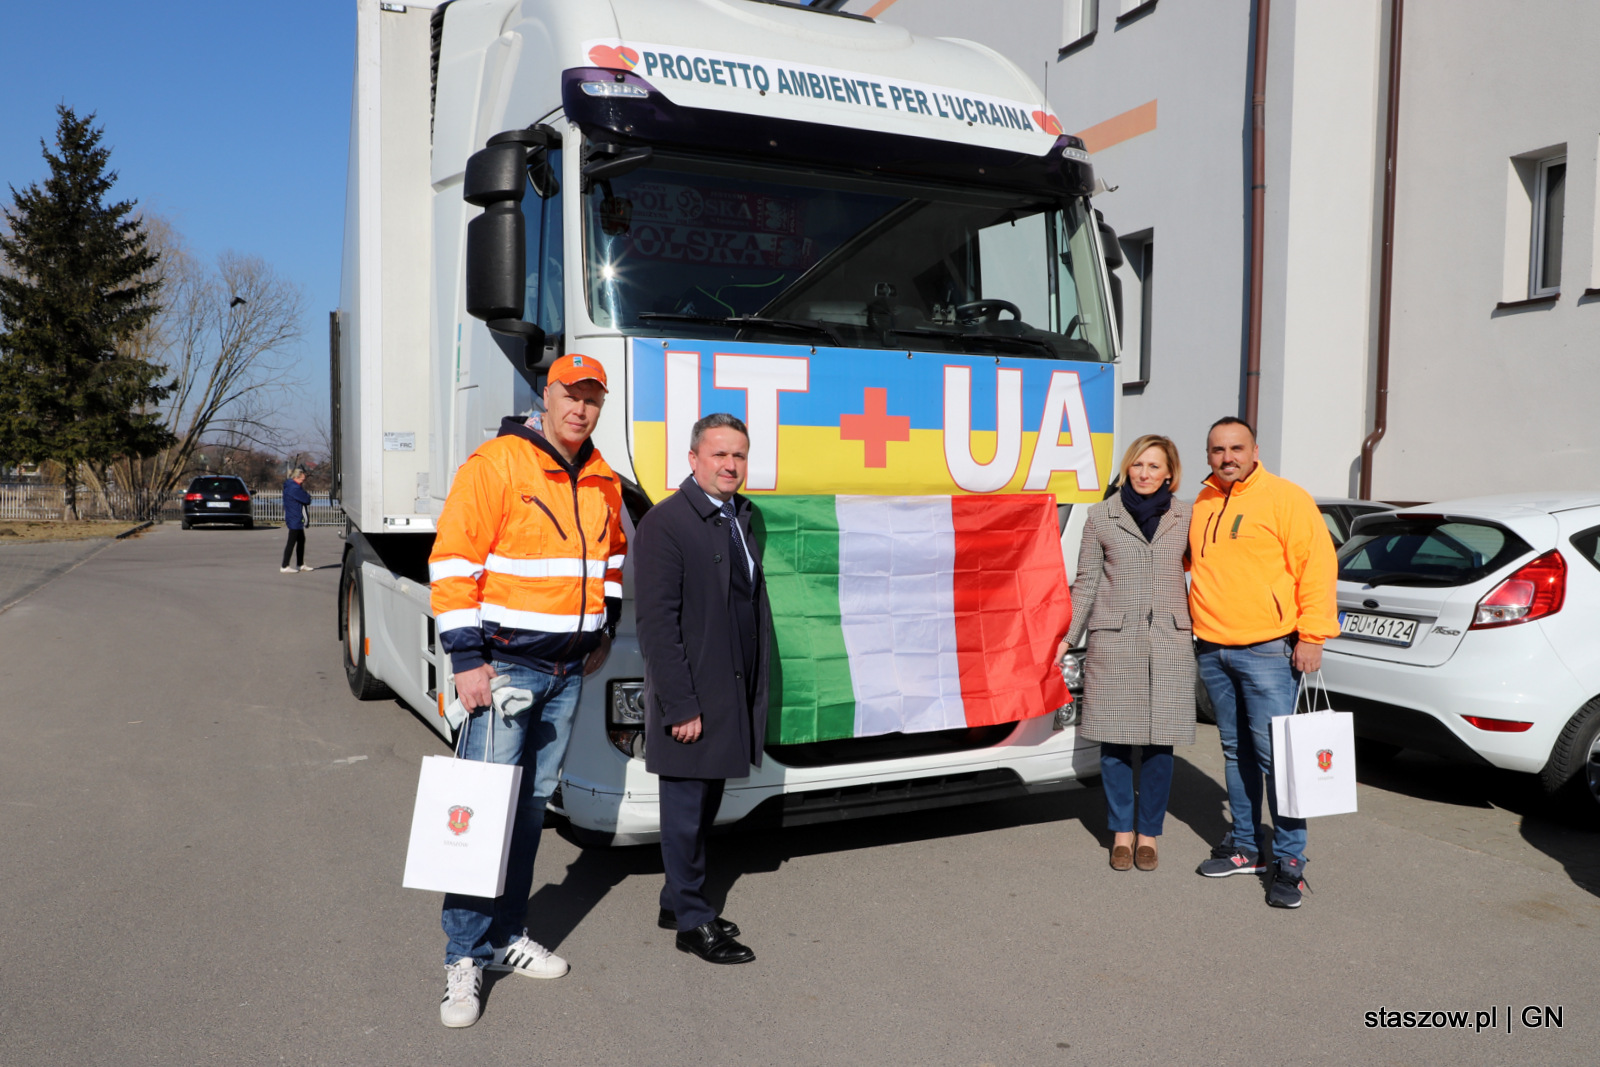 Tony pomocy z Włoch dla uchodźców z Ukrainy